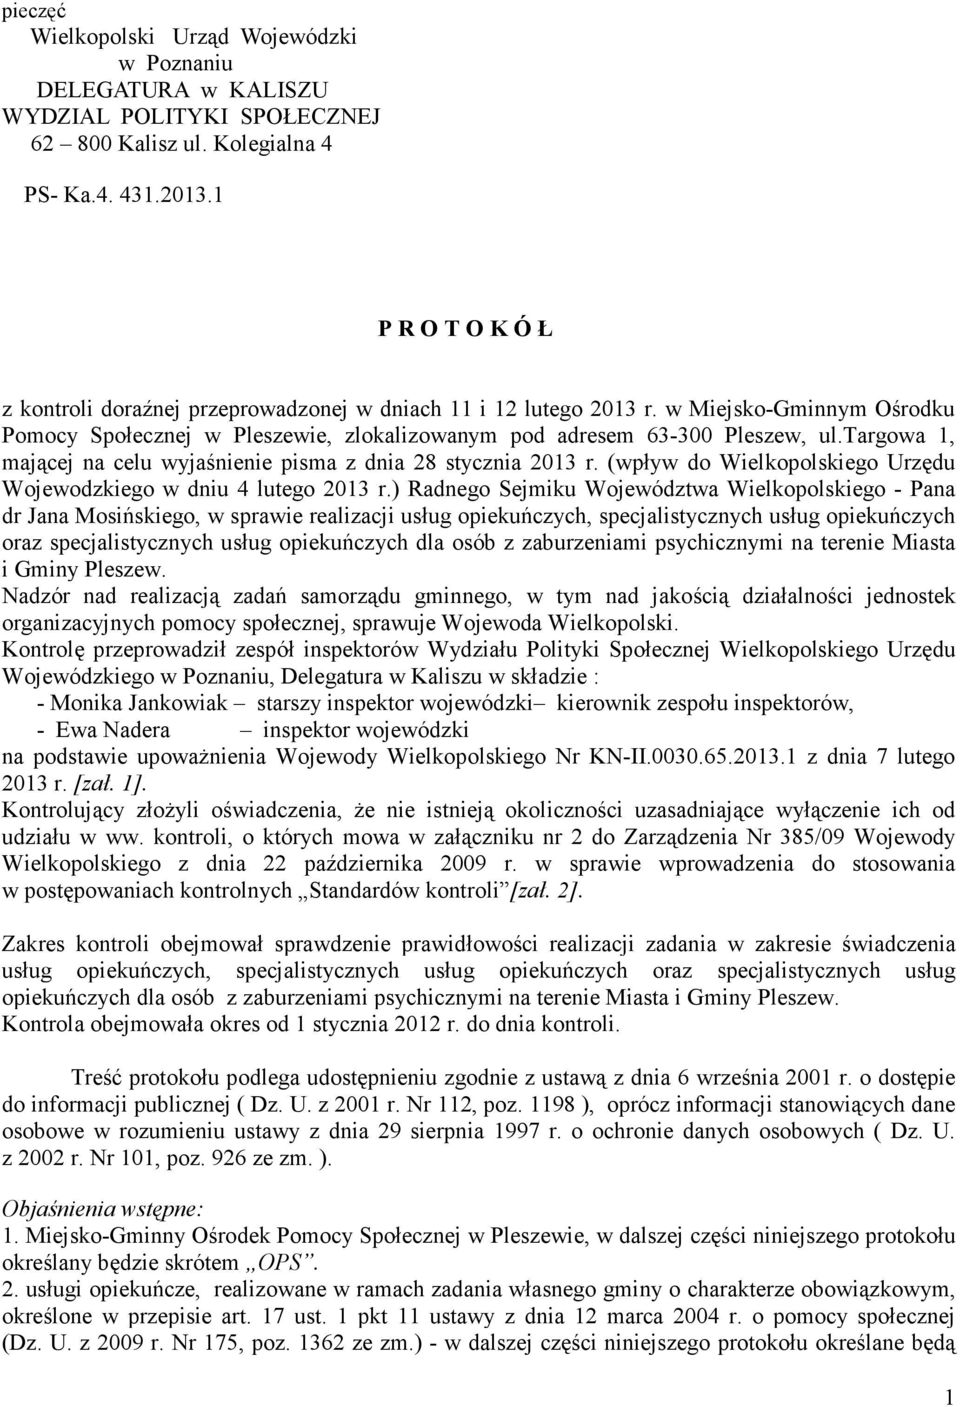 targowa 1, mającej na celu wyjaśnienie pisma z dnia 28 stycznia 2013 r. (wpływ do Wielkopolskiego Urzędu Wojewodzkiego w dniu 4 lutego 2013 r.